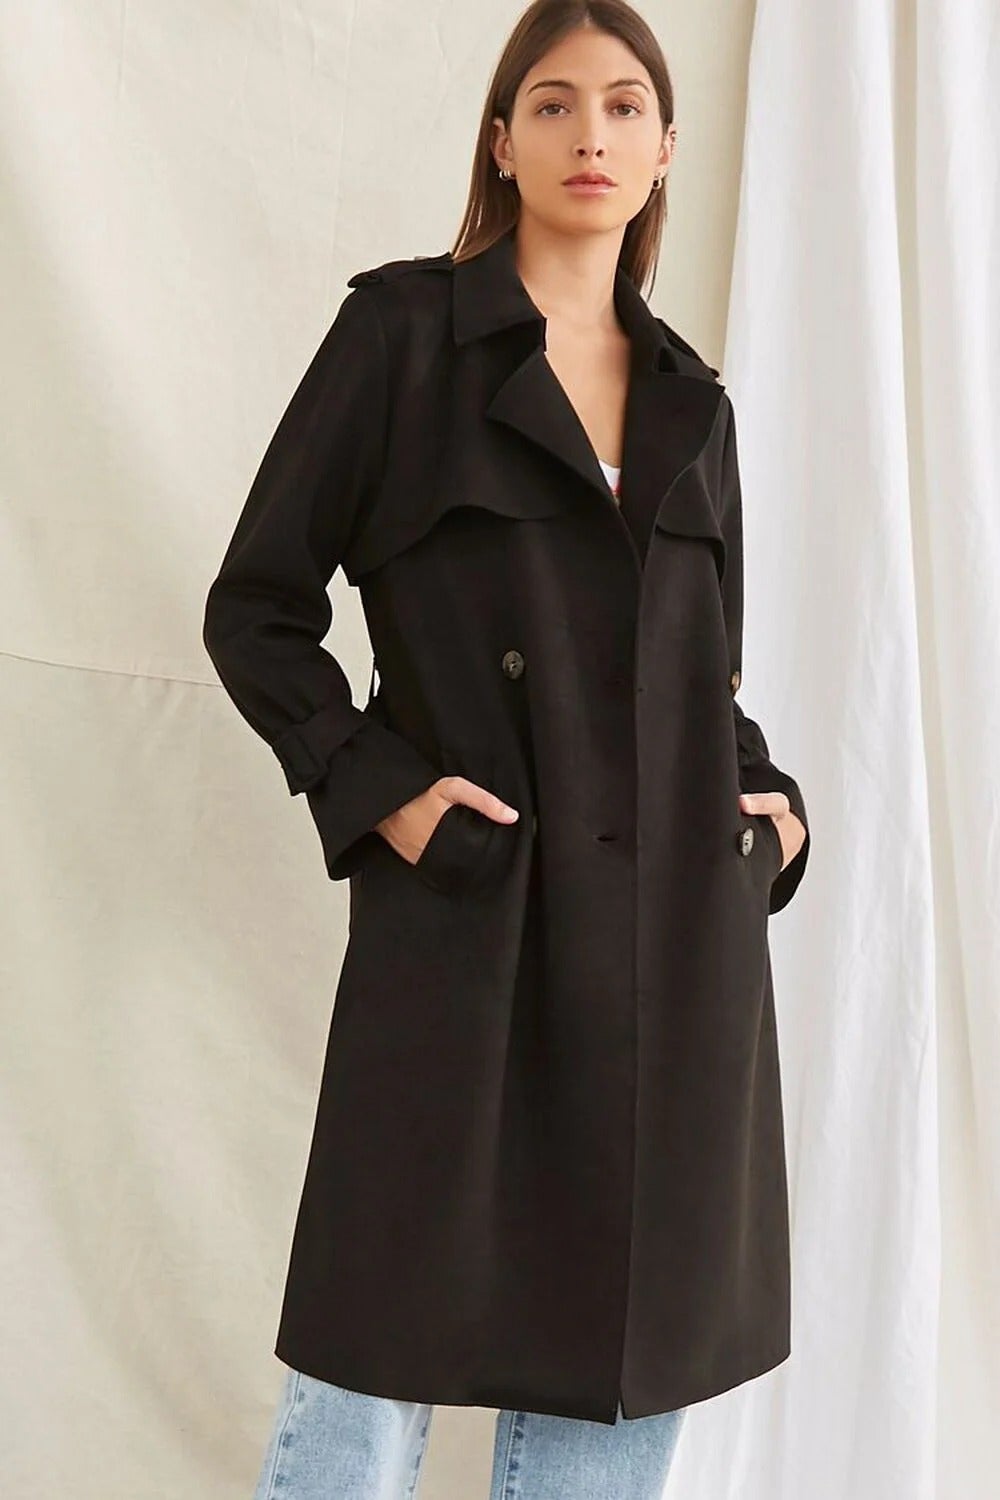 Buck Mason Women's Italian Virgin Wool Topcoat in Black, Size 2XL